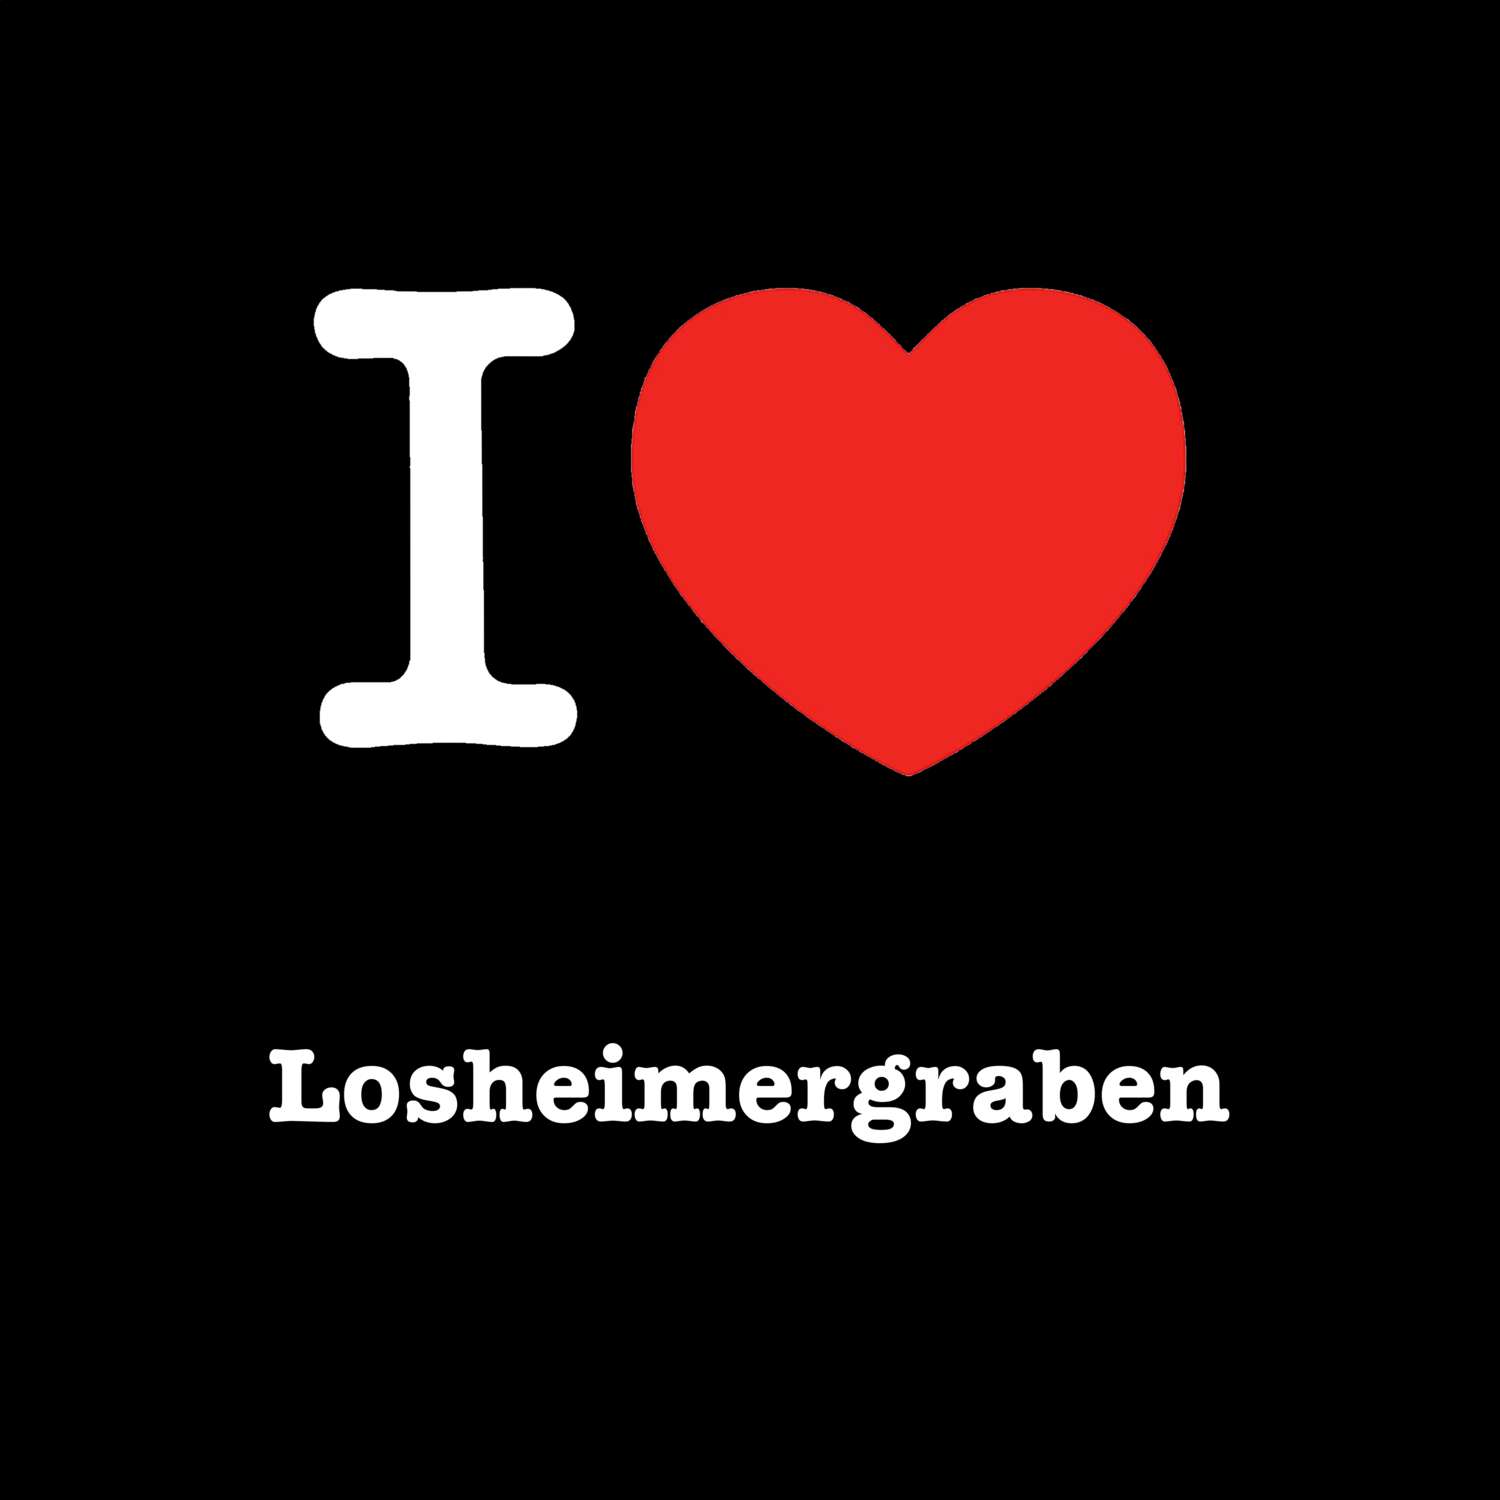 Losheimergraben T-Shirt »I love«